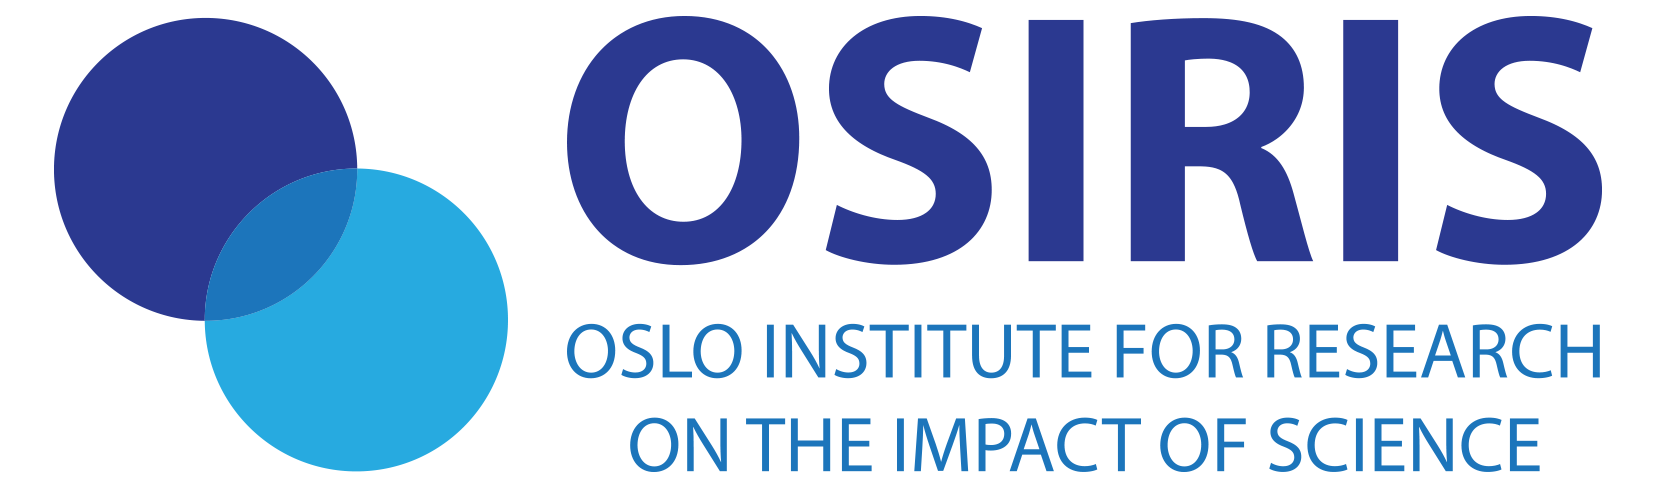 Logoen til OSIRIS (Oslo Institute for researcg on the impact of science). Teksten er blå, og ved siden av den er det to overkappende, blå sirkler.